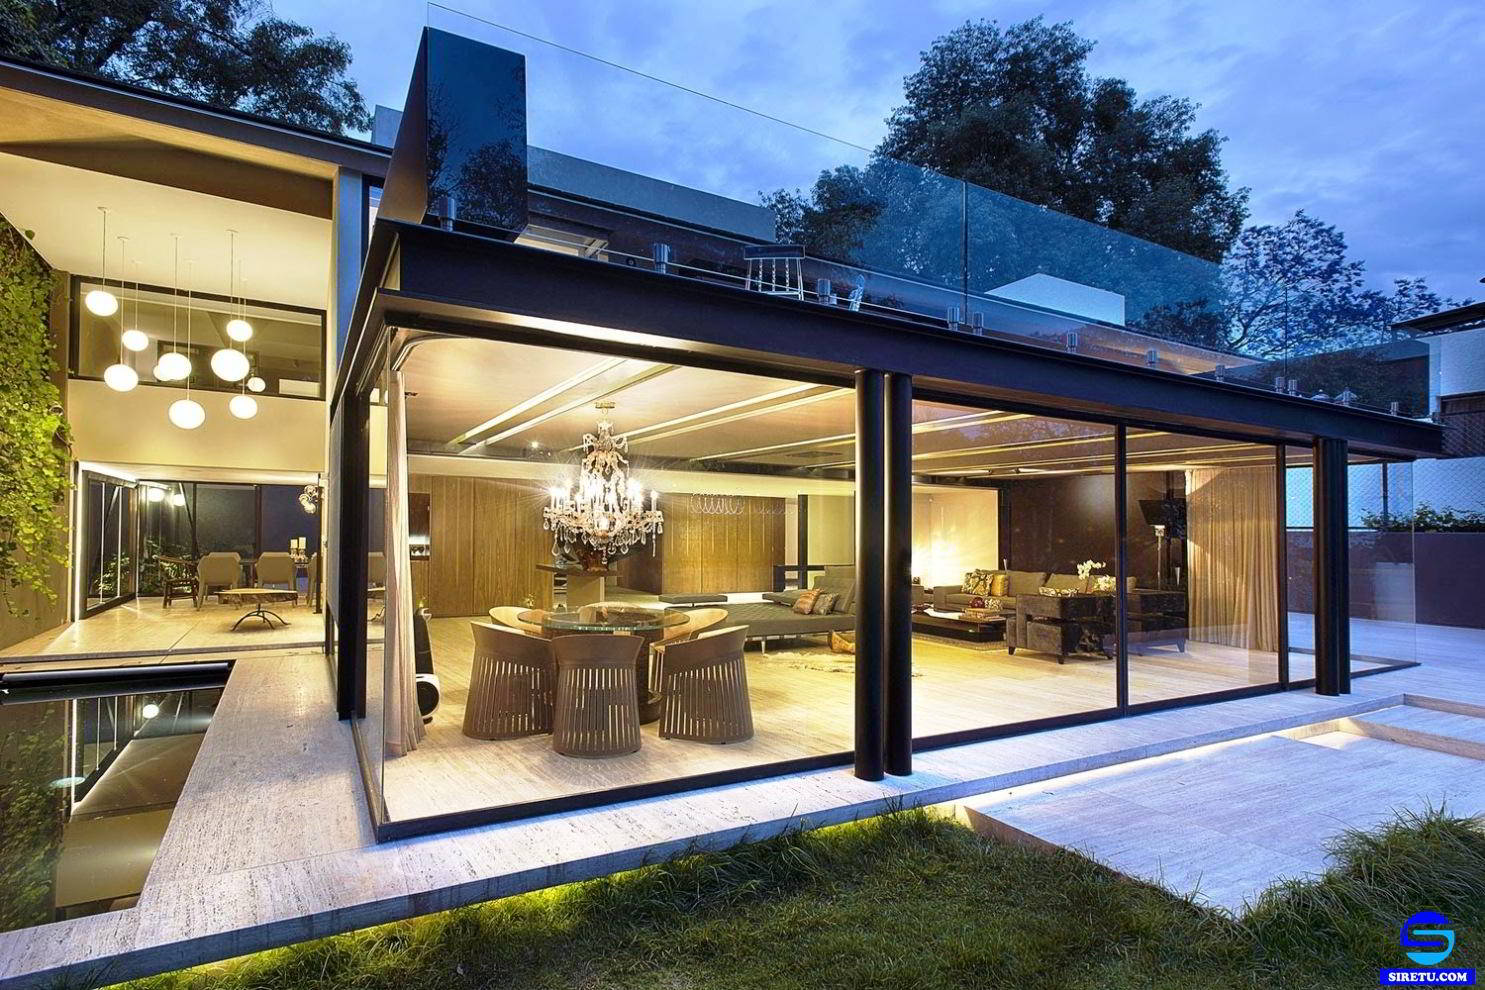  20 desain rumah  kaca  minimalis  modern 2 lantai sederhana